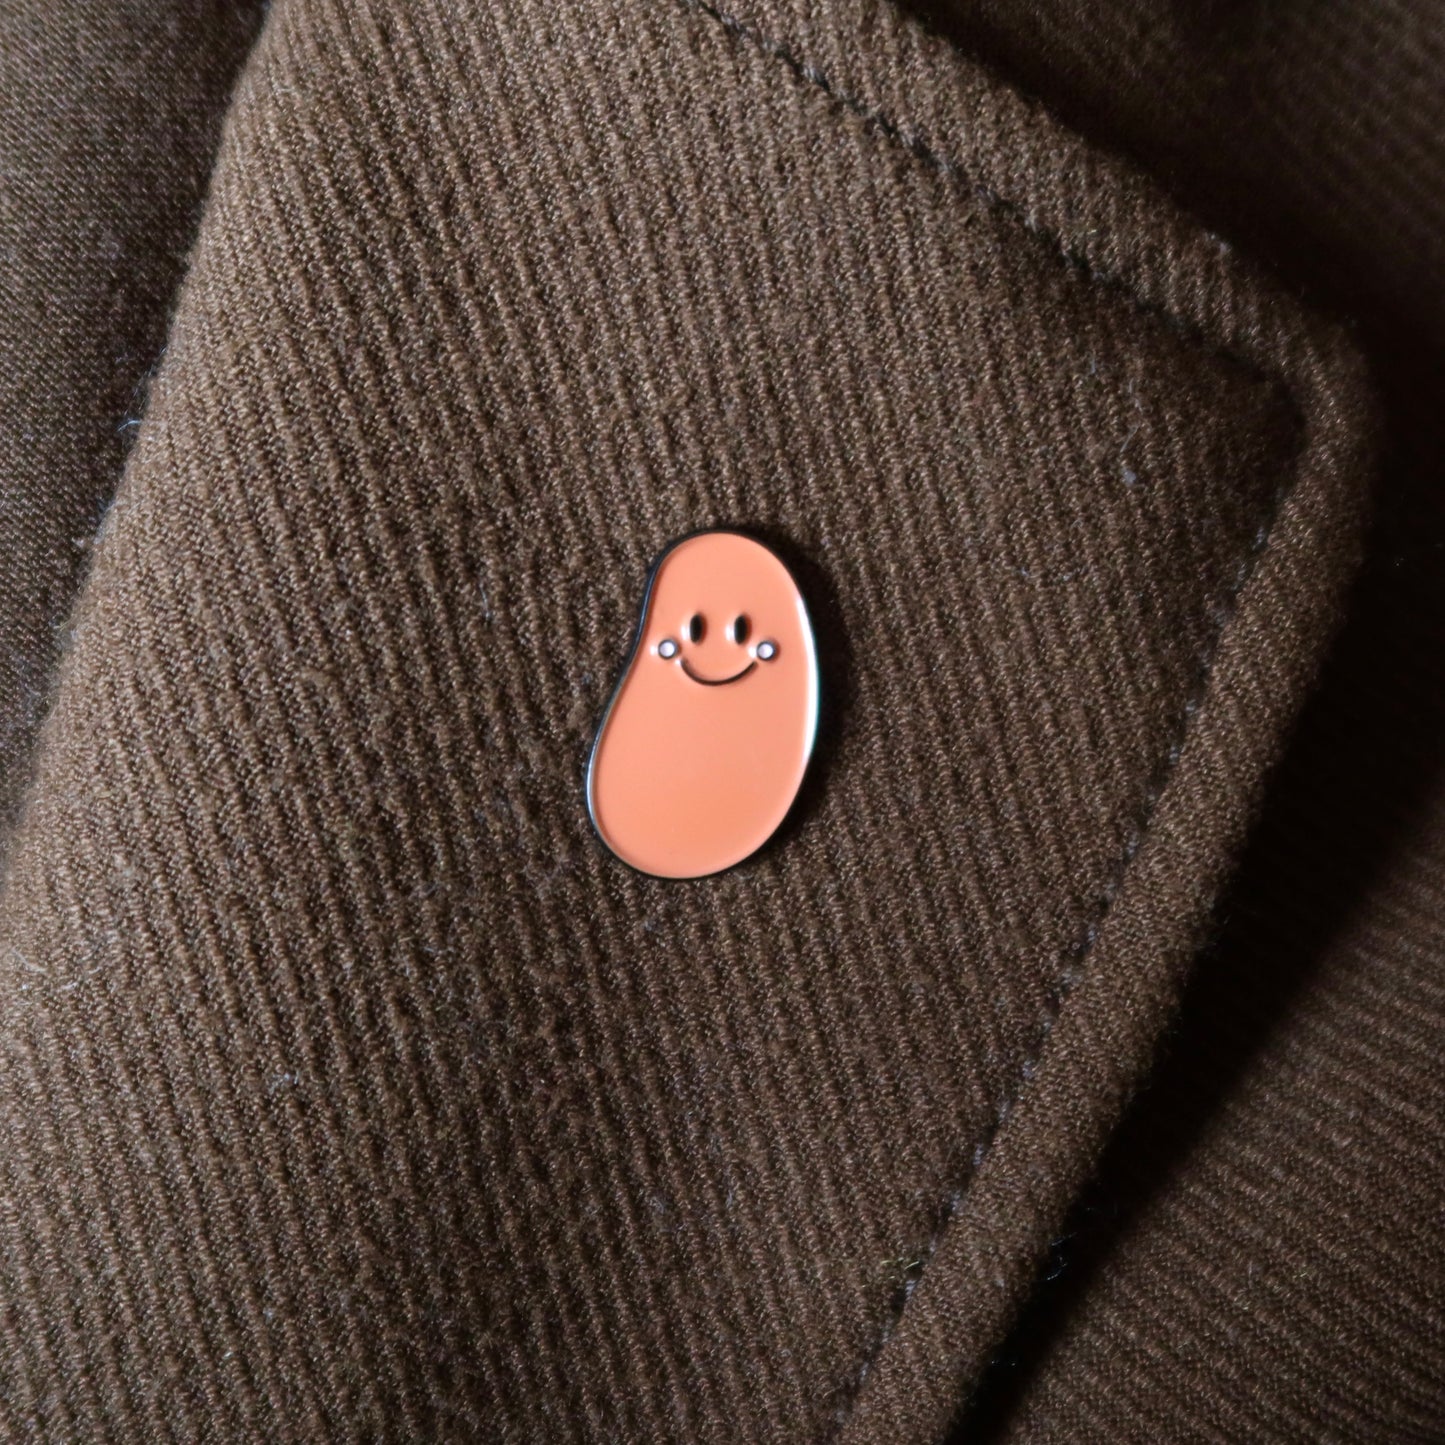 Bean Pin Badge